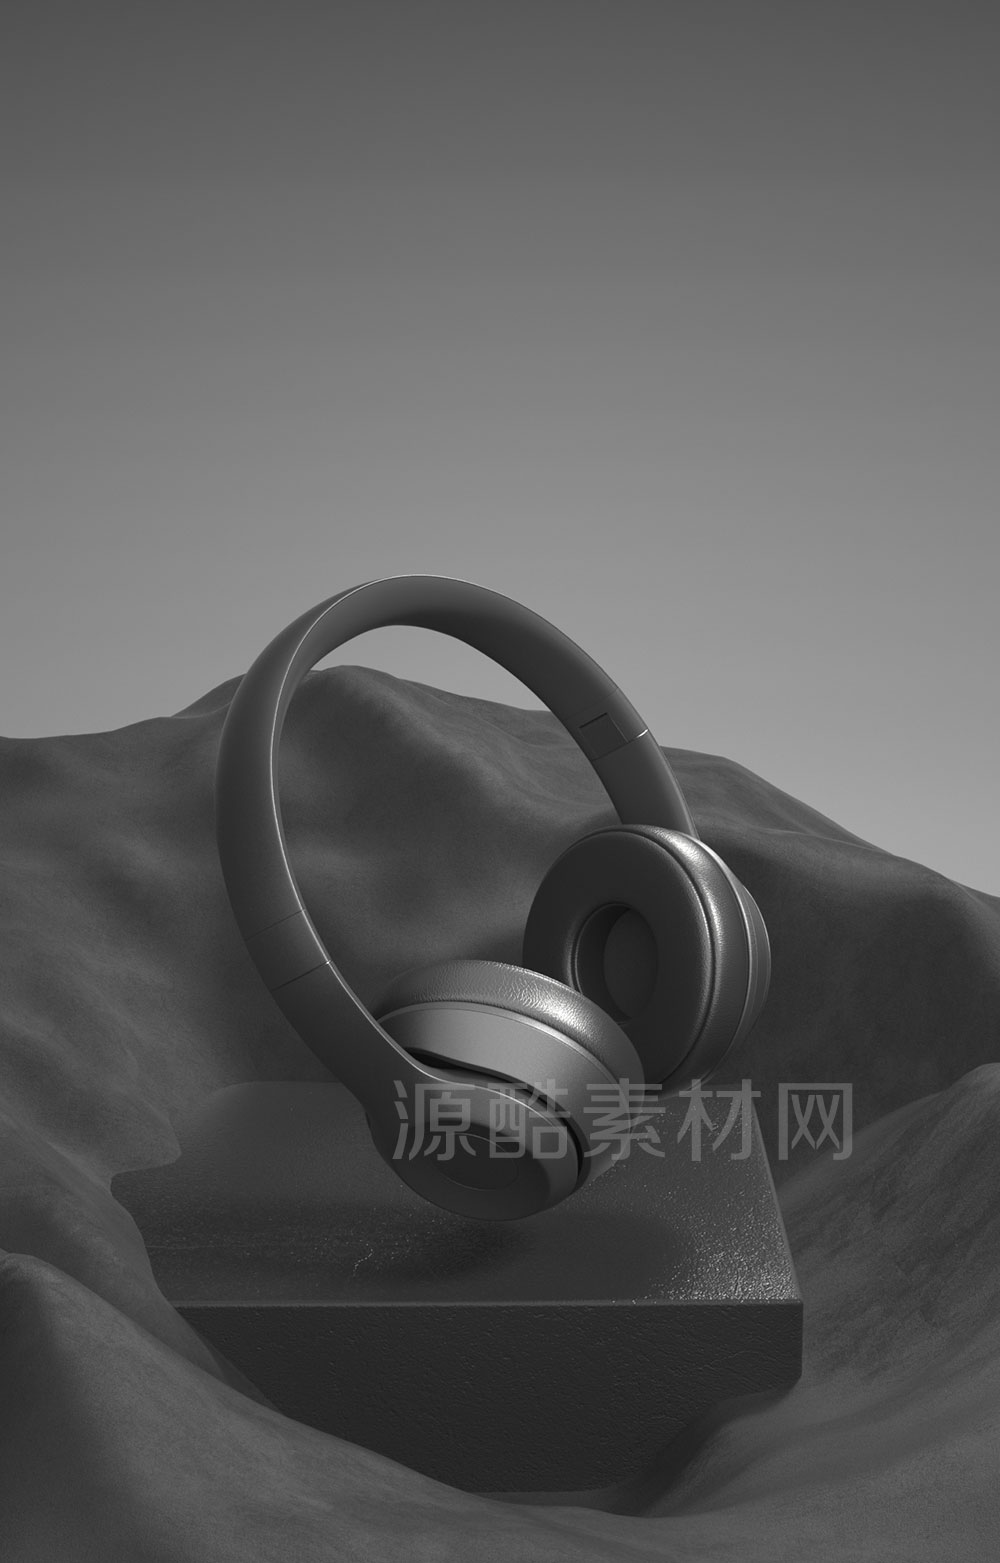 C4D头戴式无线耳机渲染工程头戴式耳机模型-C4D模型下载